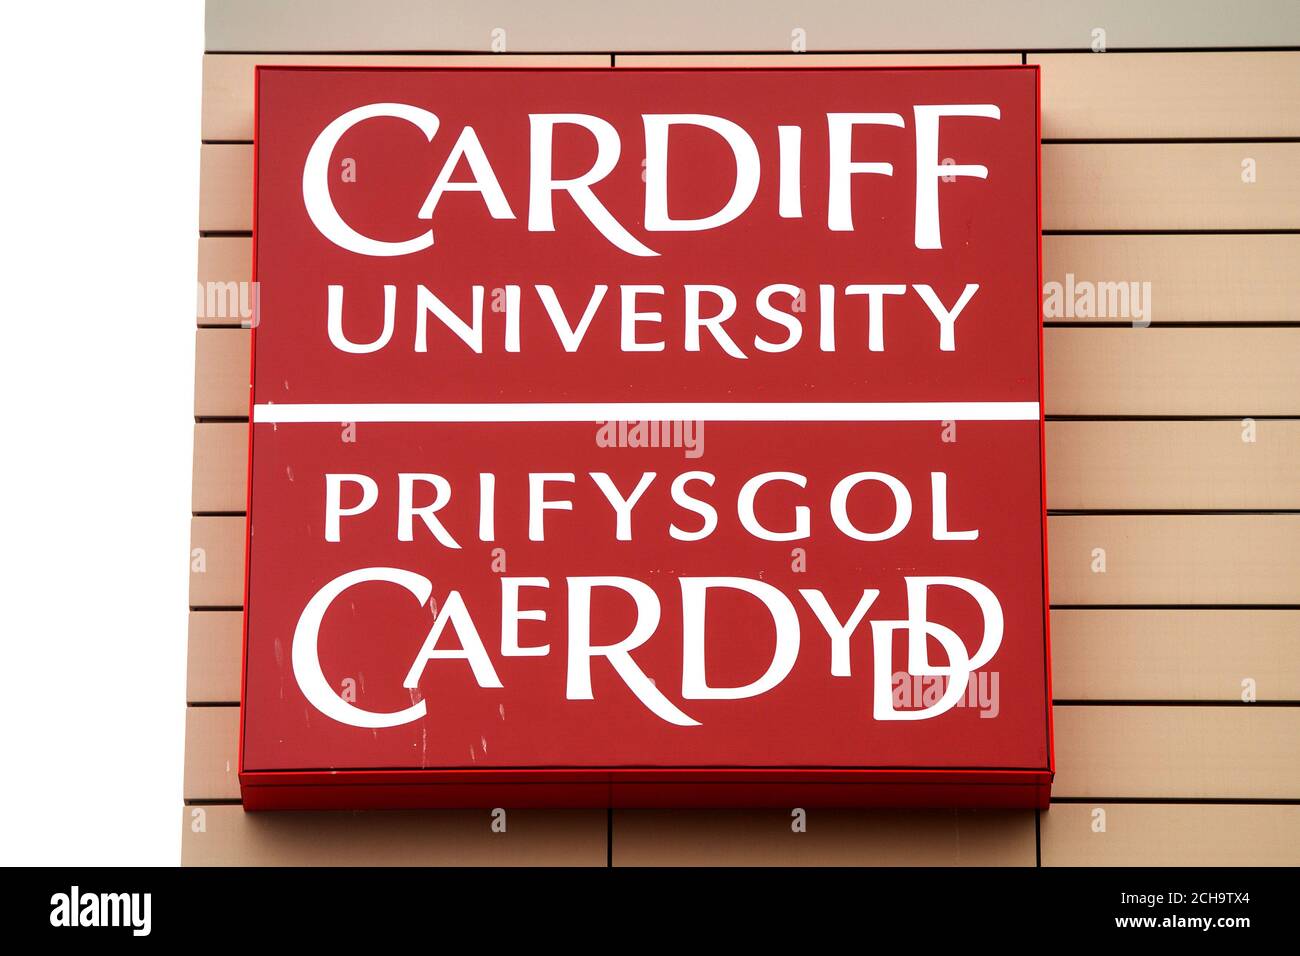 Allgemeine Ansicht des Brain Research Imaging Center der Cardiff University in Cardiff, Wales. Stockfoto